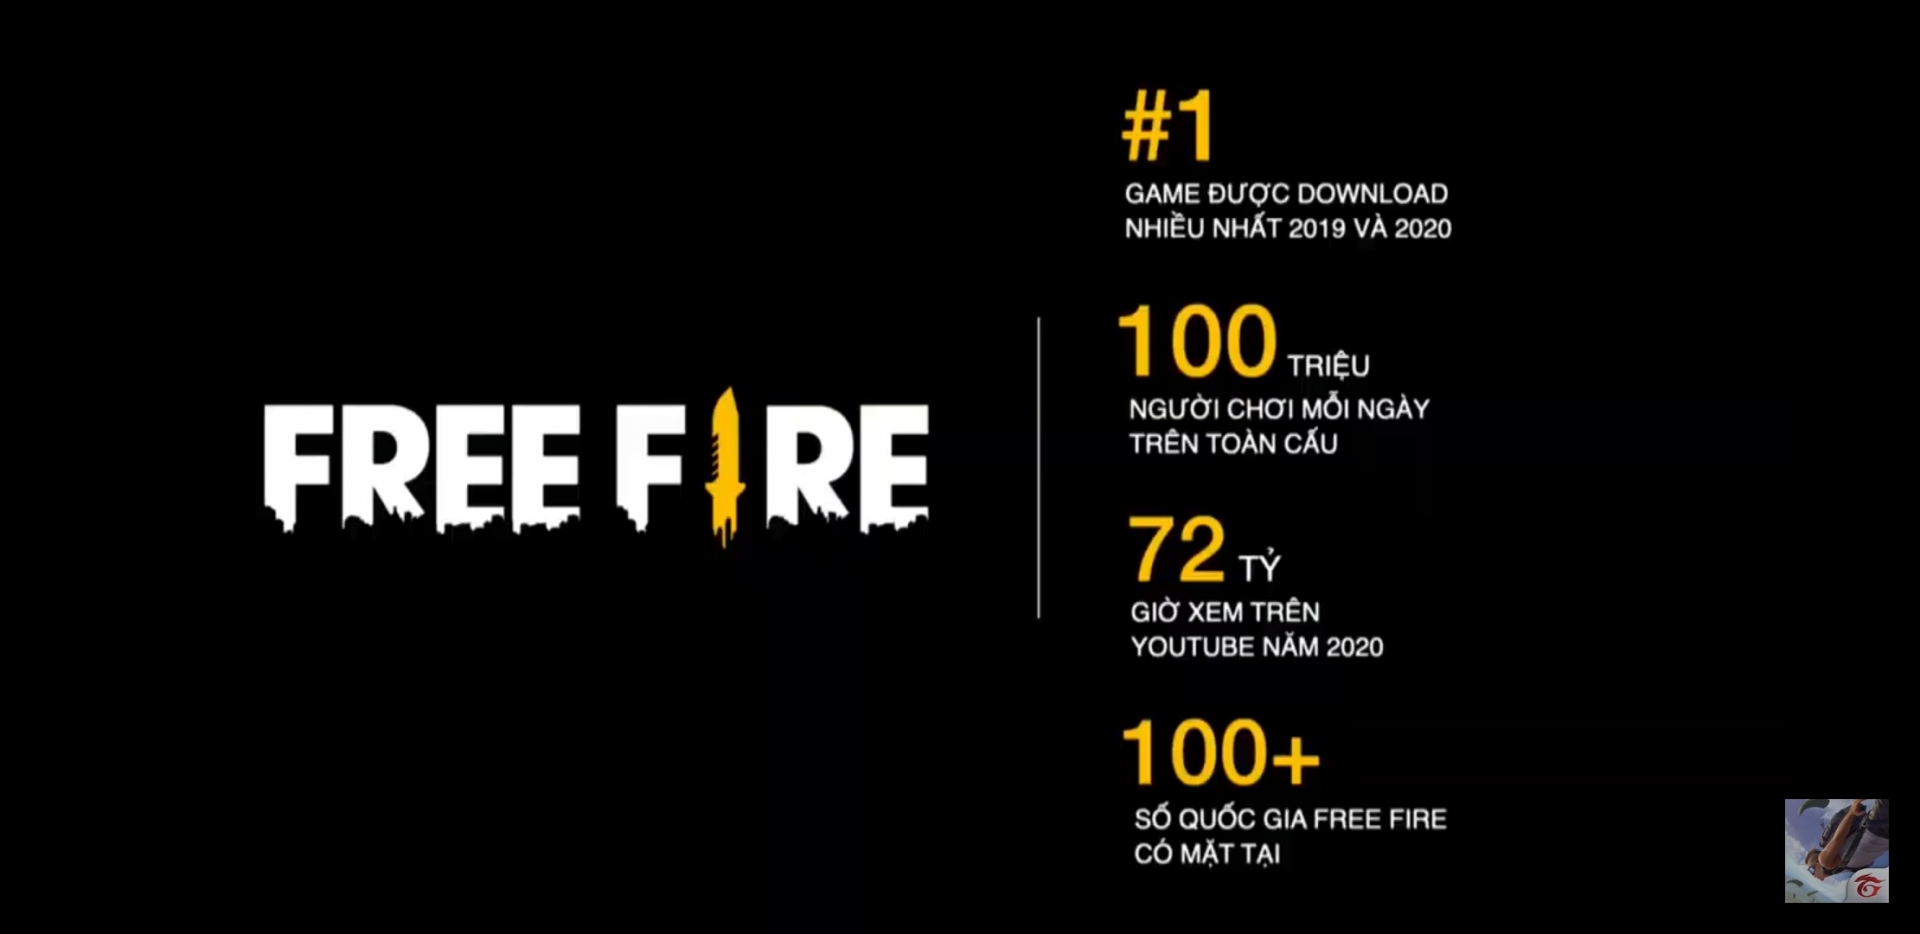 Free Fire là tựa game thành công với đông đảo người chơi tại Việt Nam và thế giới.